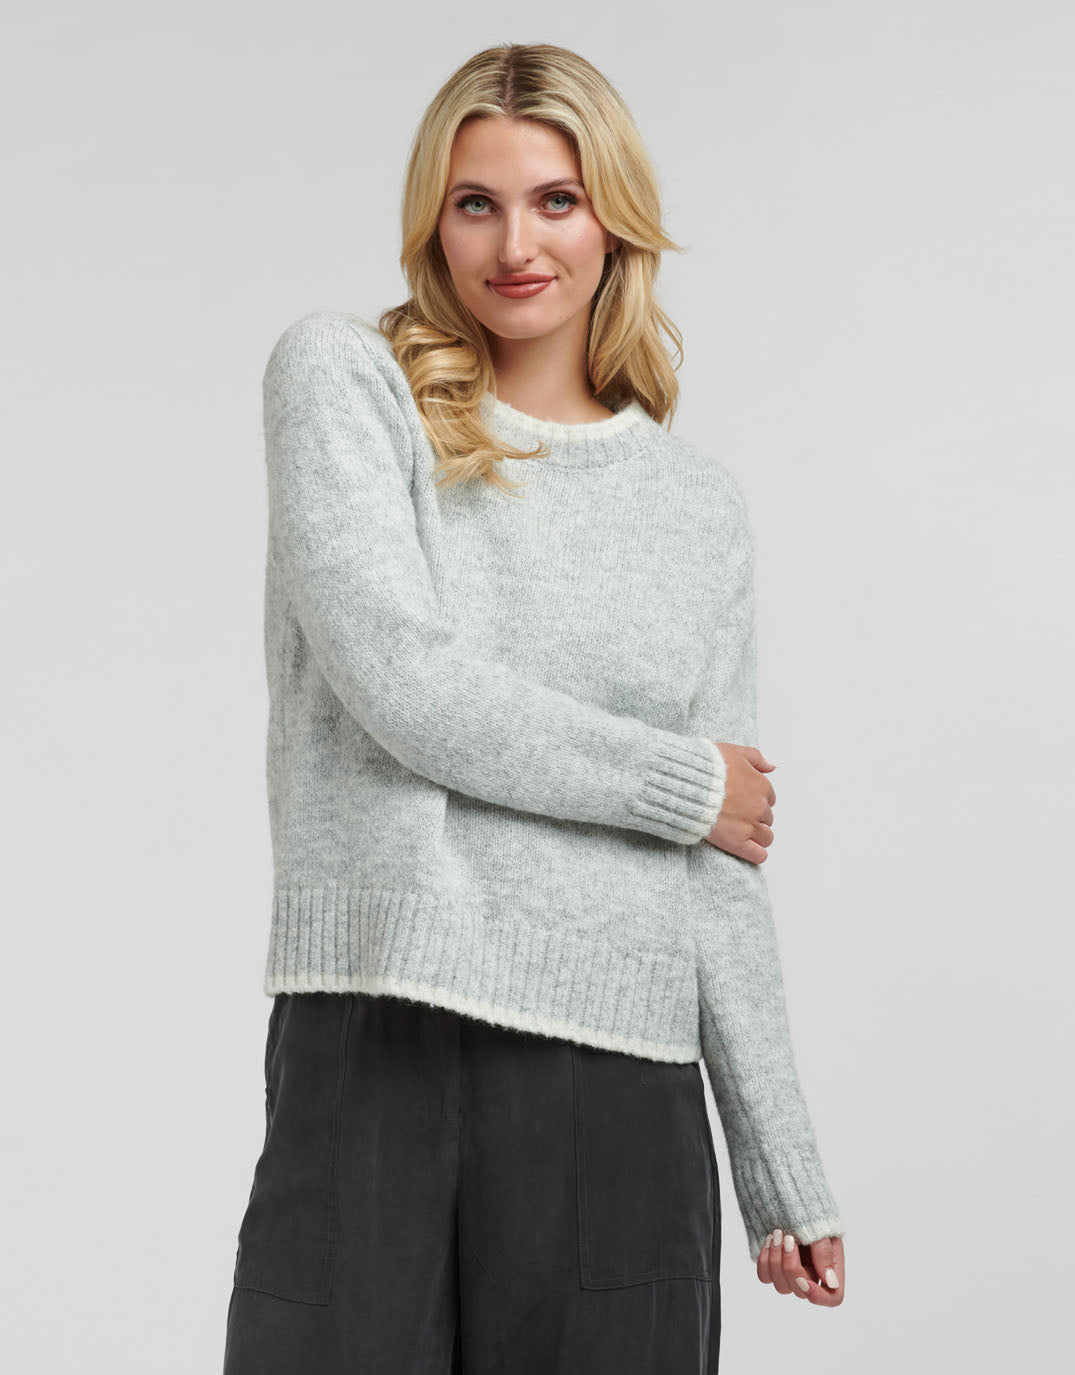 365-days-rigby-alpaca-tweed-knit-silver-womens-clothing